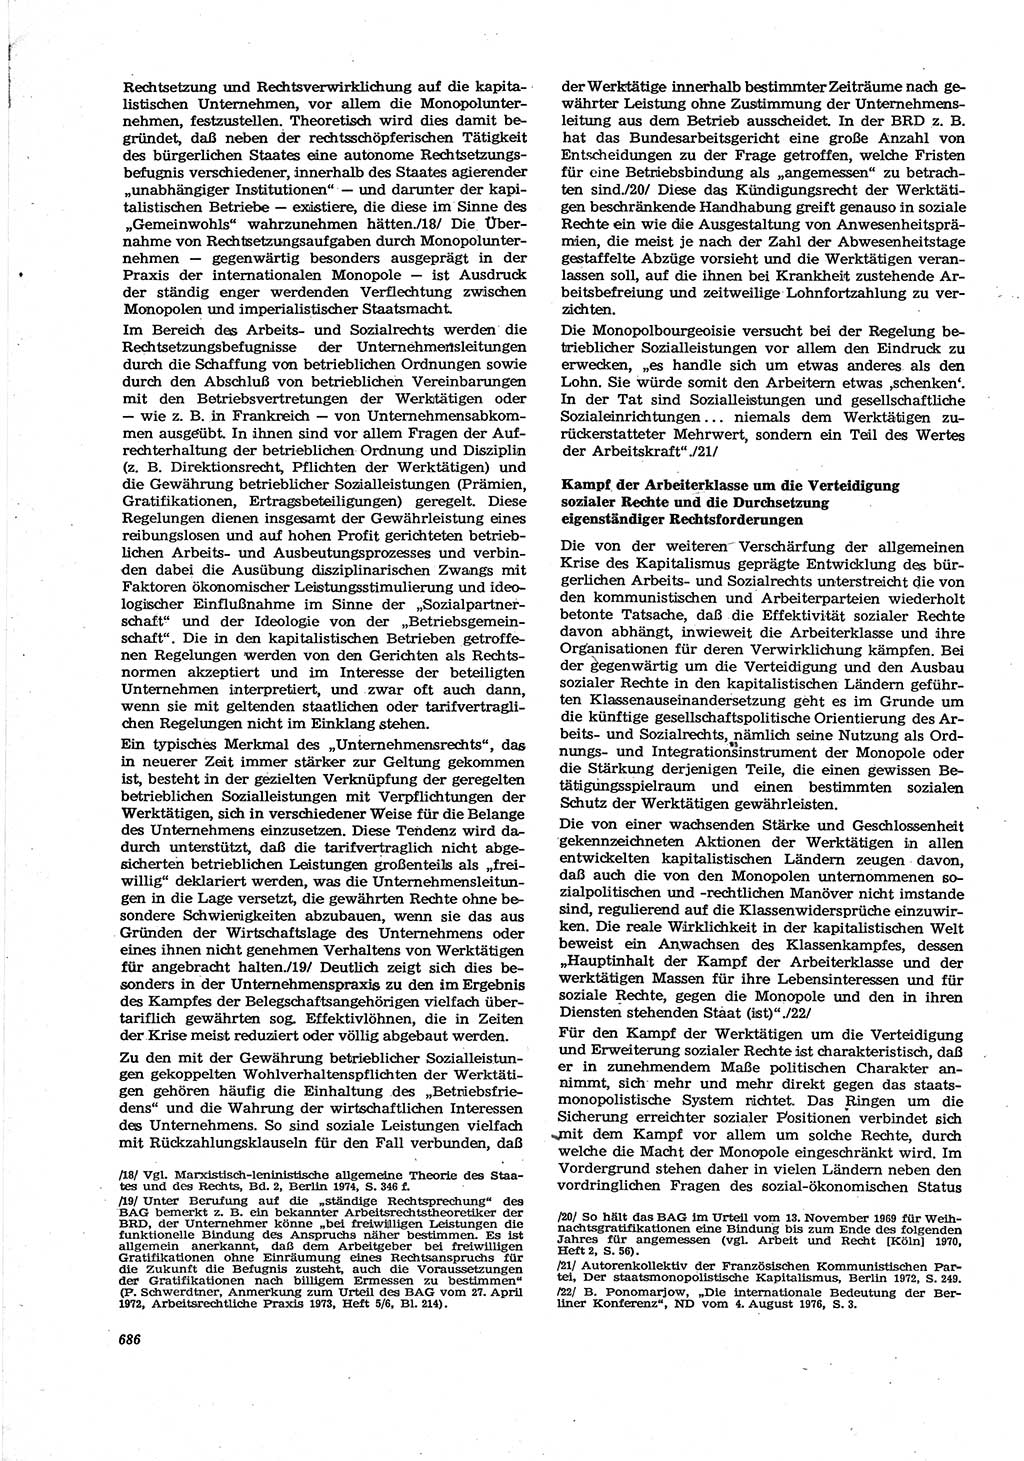 Neue Justiz (NJ), Zeitschrift für Recht und Rechtswissenschaft [Deutsche Demokratische Republik (DDR)], 30. Jahrgang 1976, Seite 686 (NJ DDR 1976, S. 686)